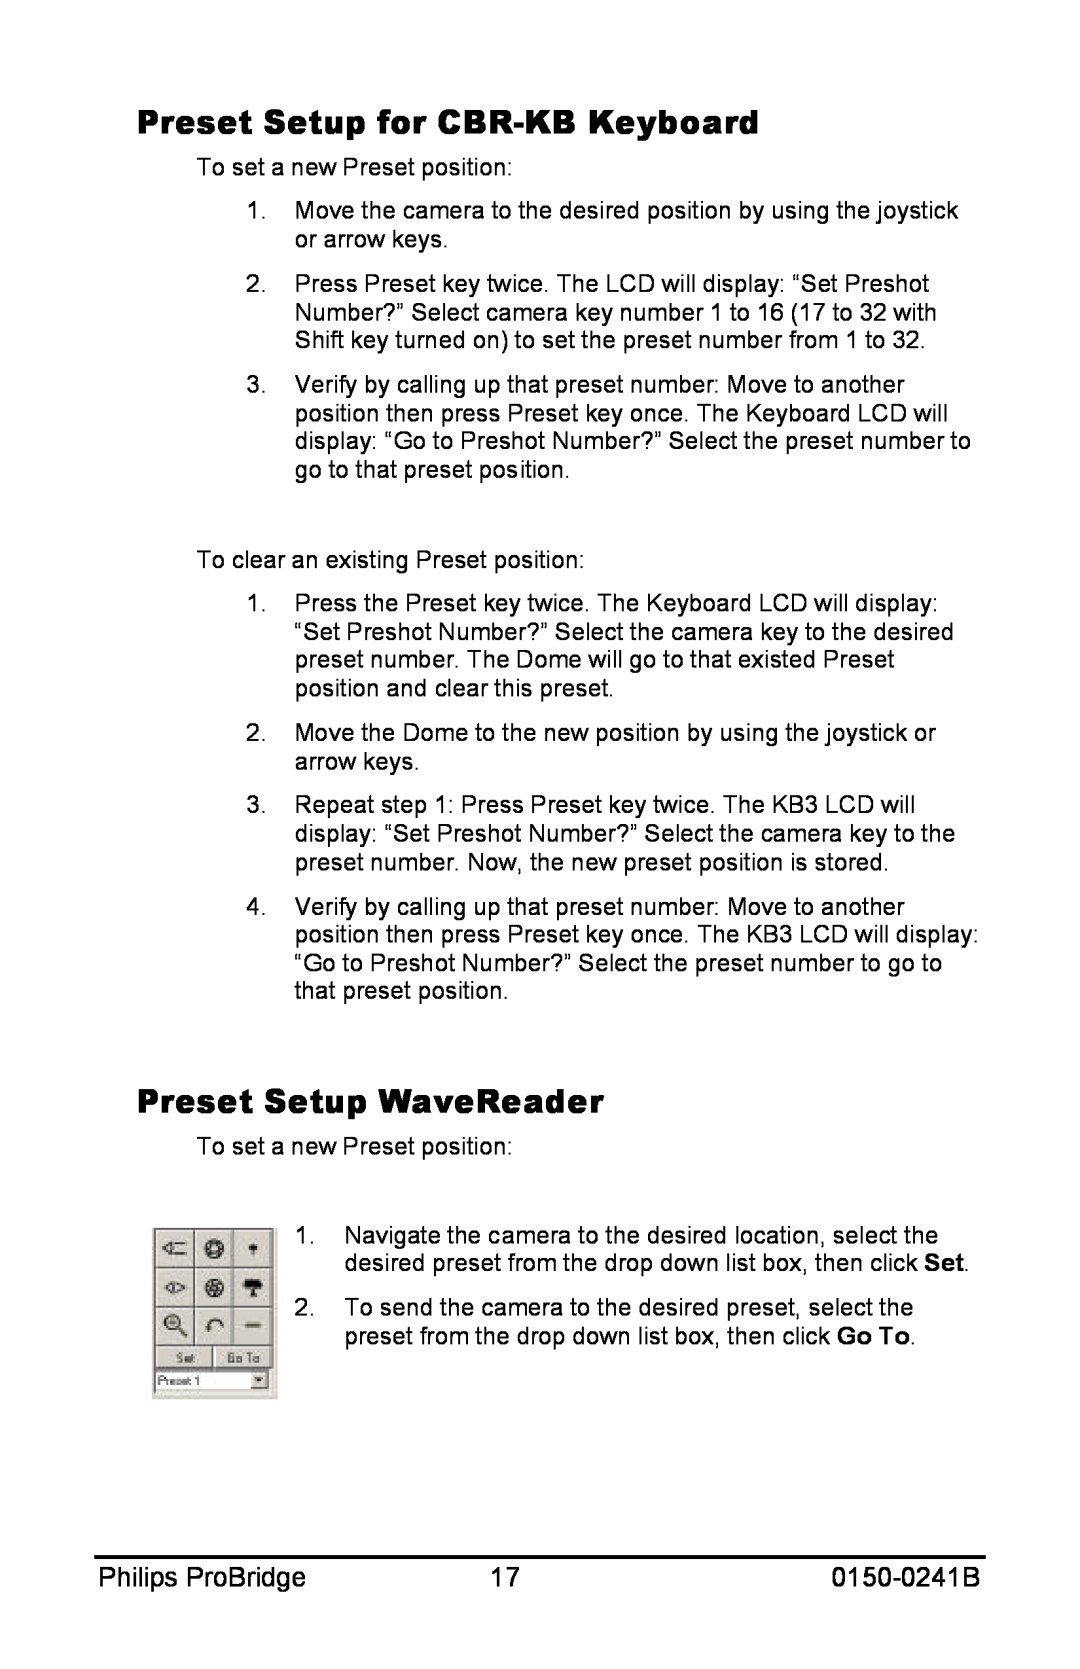 Philips 0150-0241B user manual Preset Setup for CBR-KBKeyboard, Preset Setup WaveReader, Philips ProBridge 